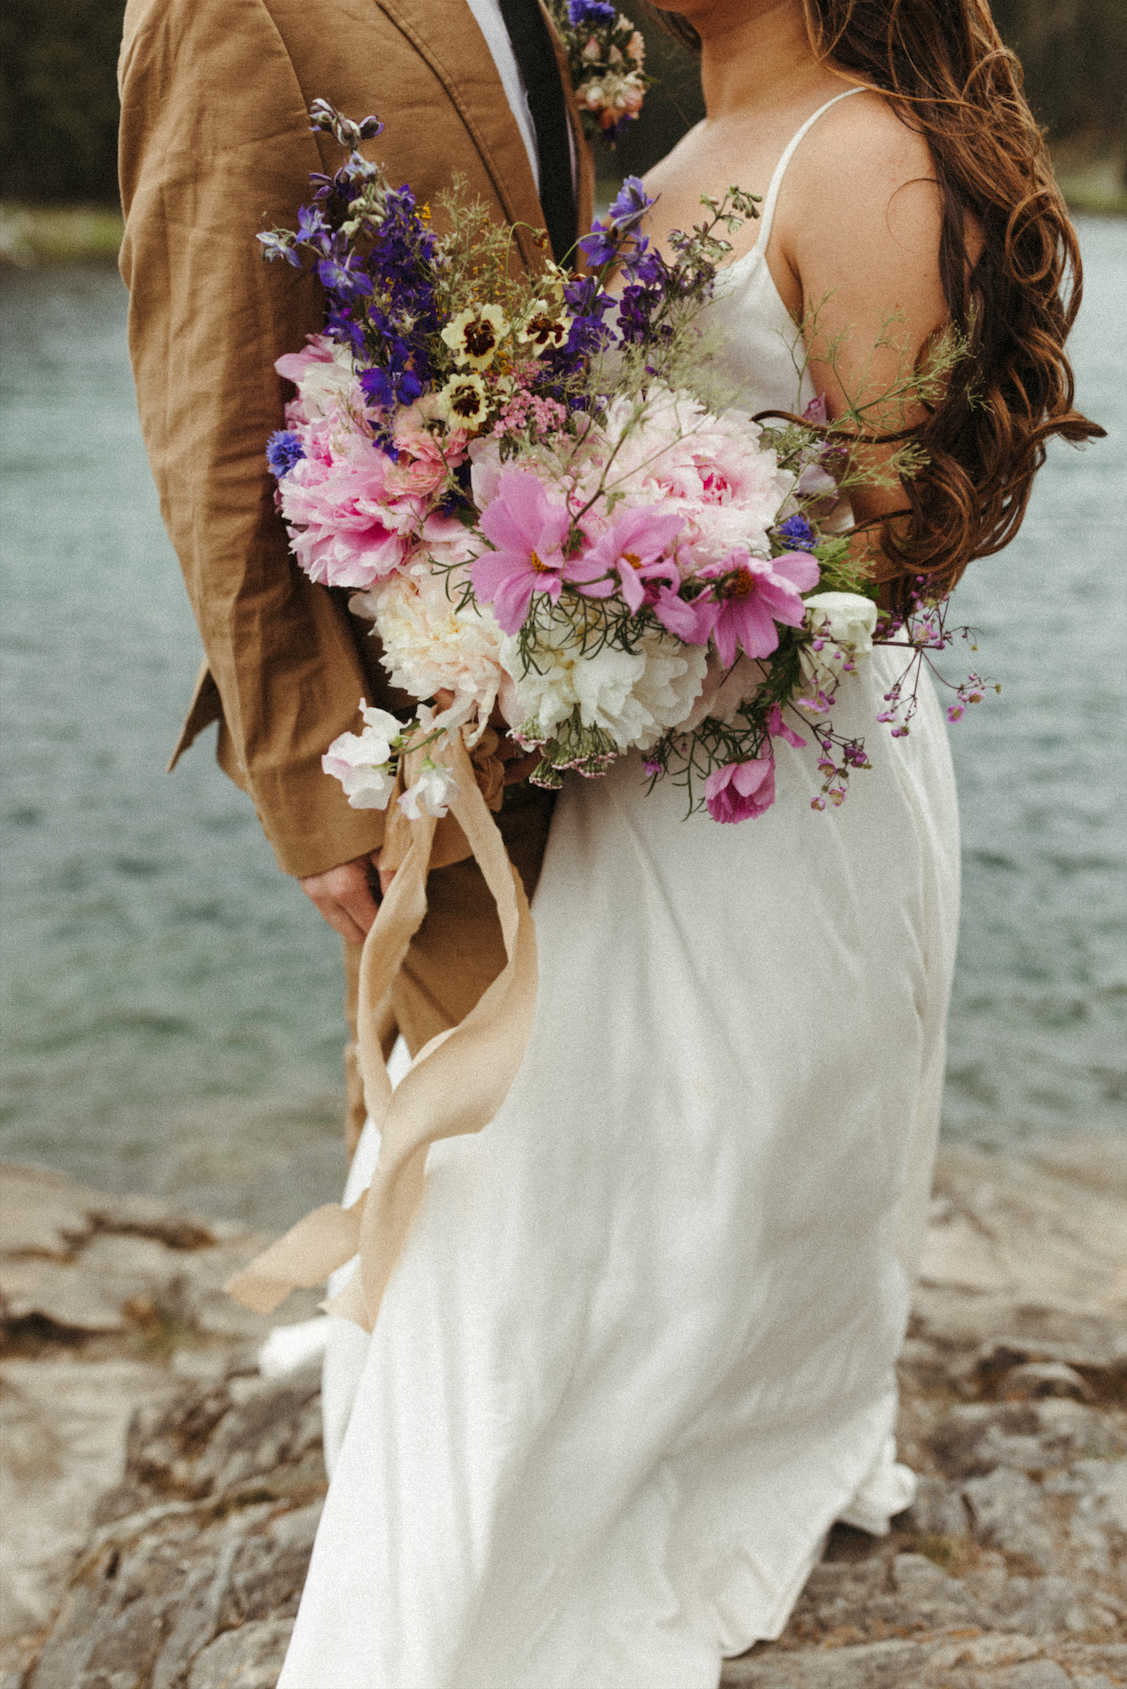 Wedding florals from an elopement at Denali National Park